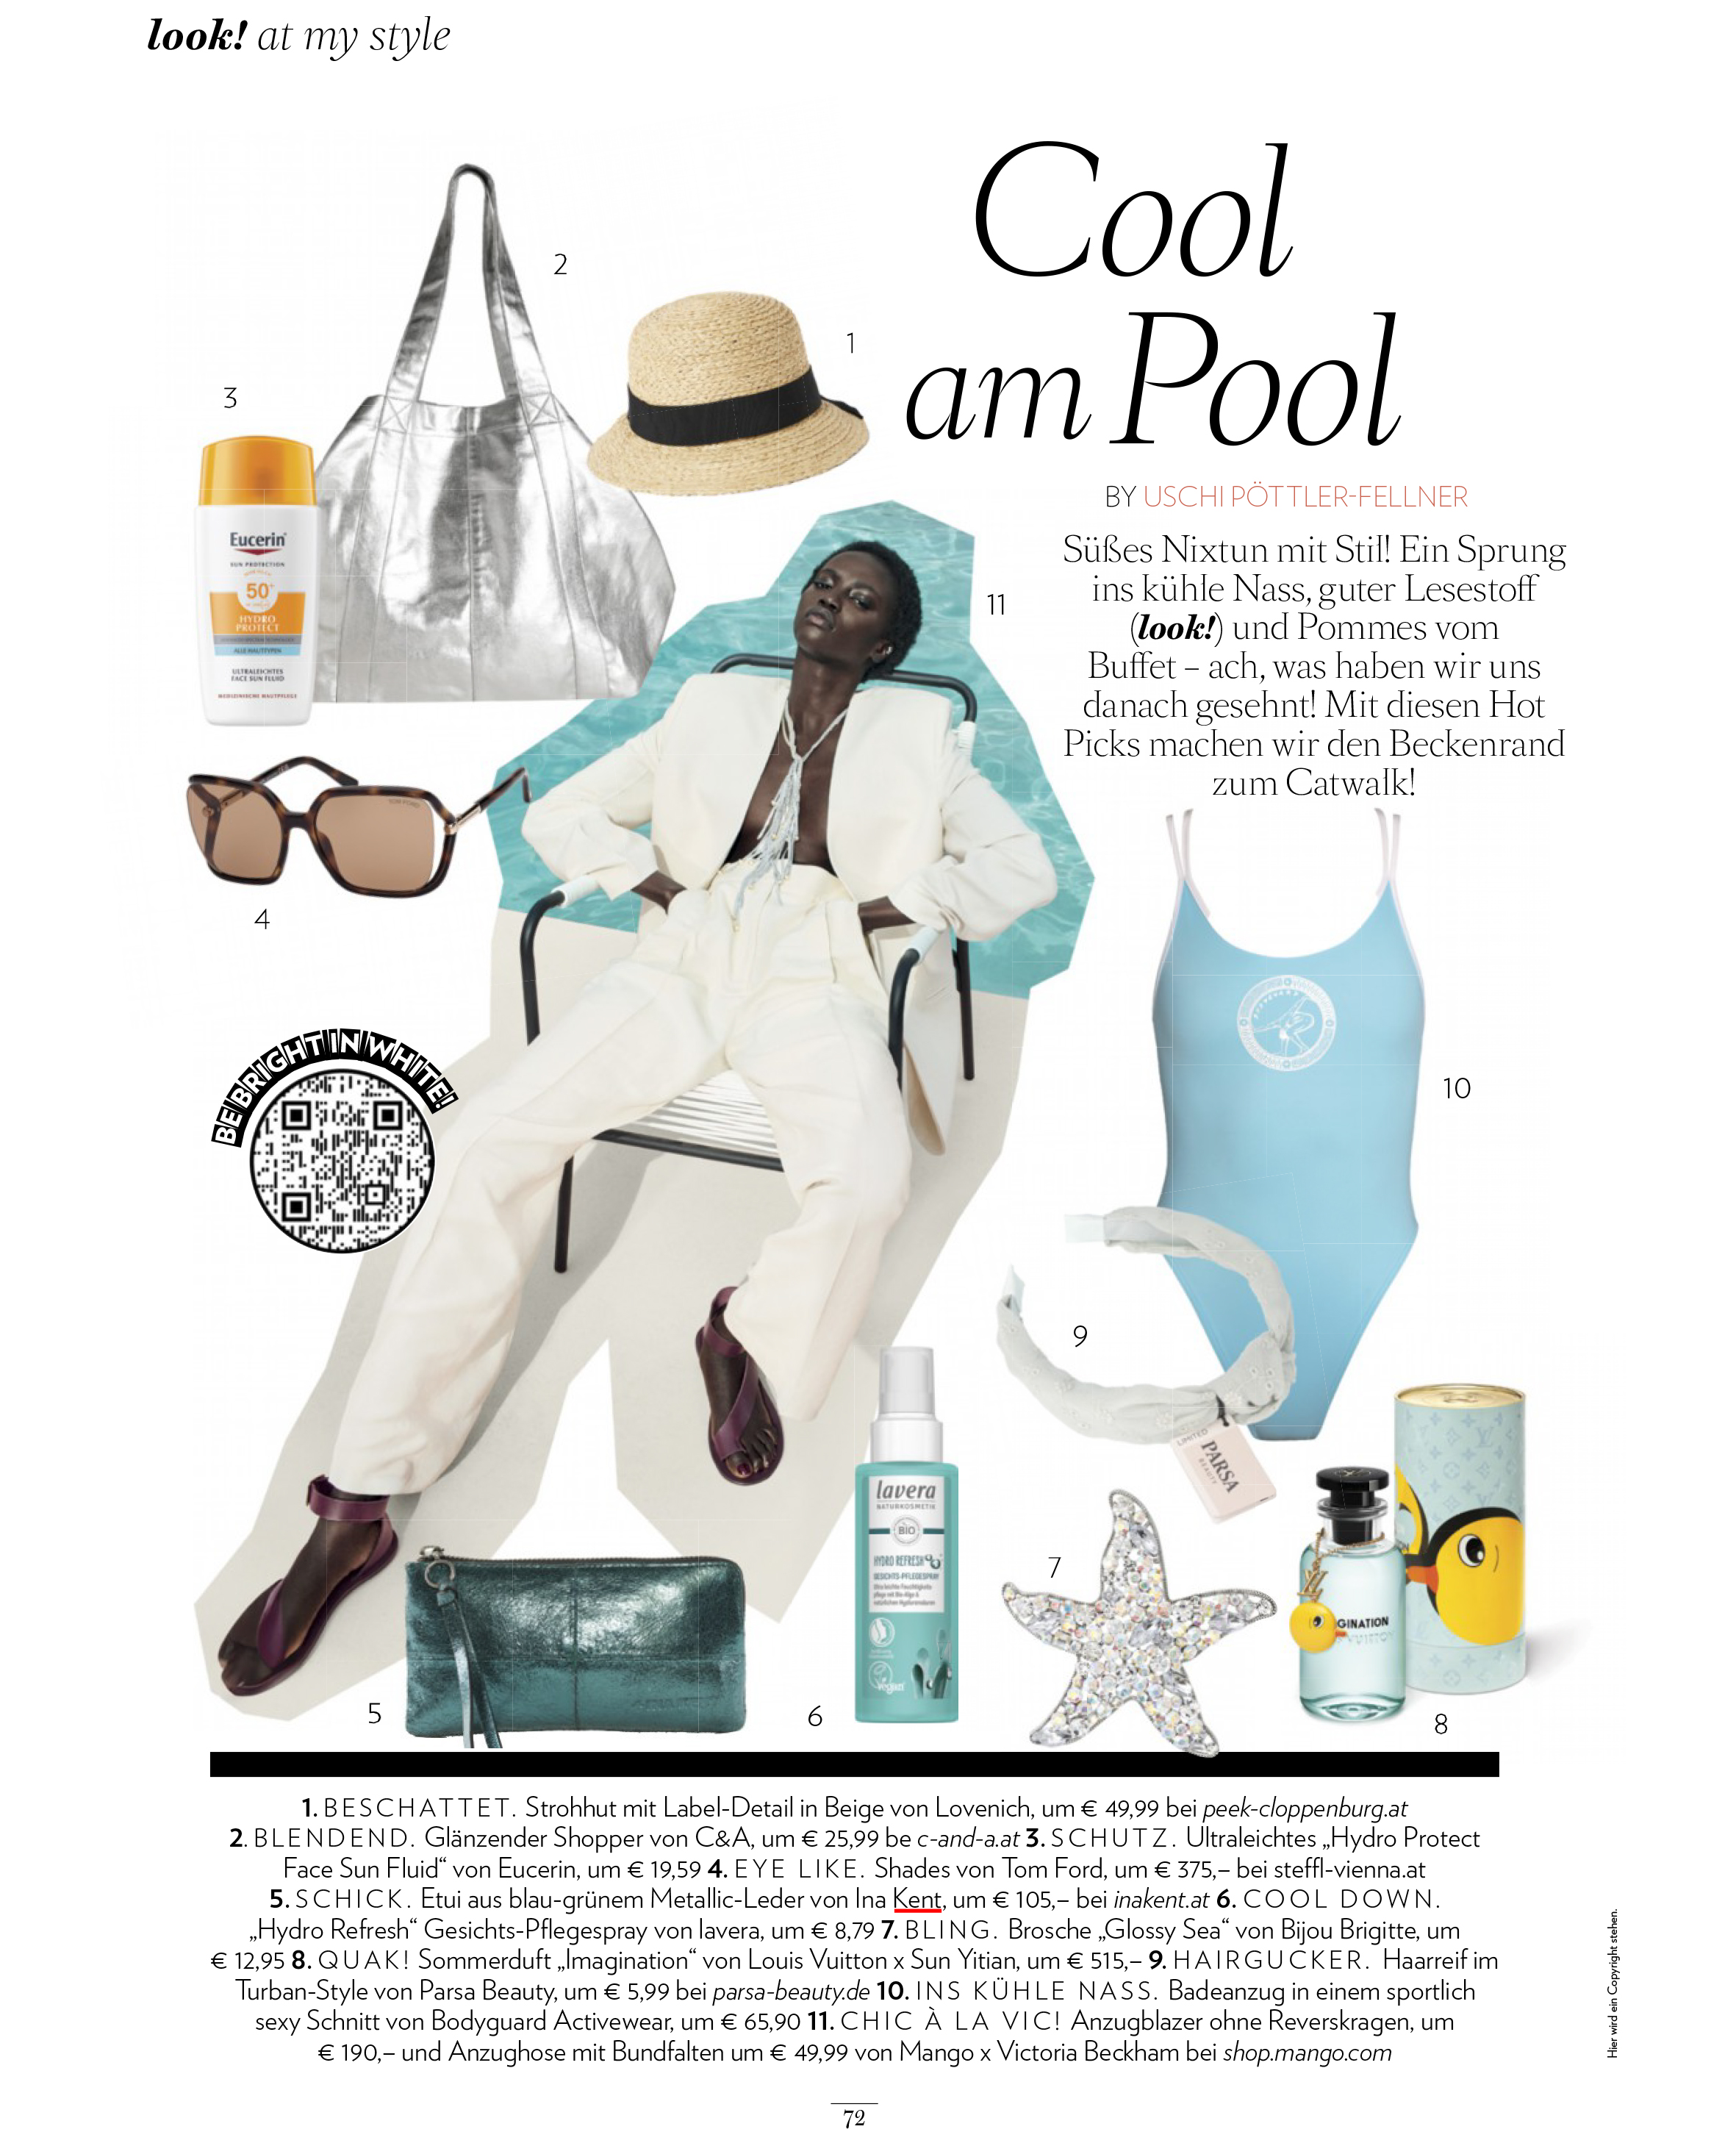 Eine Collage aus Pool-Accessoires, Hautpflegeprodukten und einem liegenden Model in Urlaubskleidung von INA KENT. Der Text enthält Beschreibungen und Preise auf Deutsch. Zu den Artikeln gehören ein mintfarbener Badeanzug, ein Strohhut und eine Sonnenbrille.